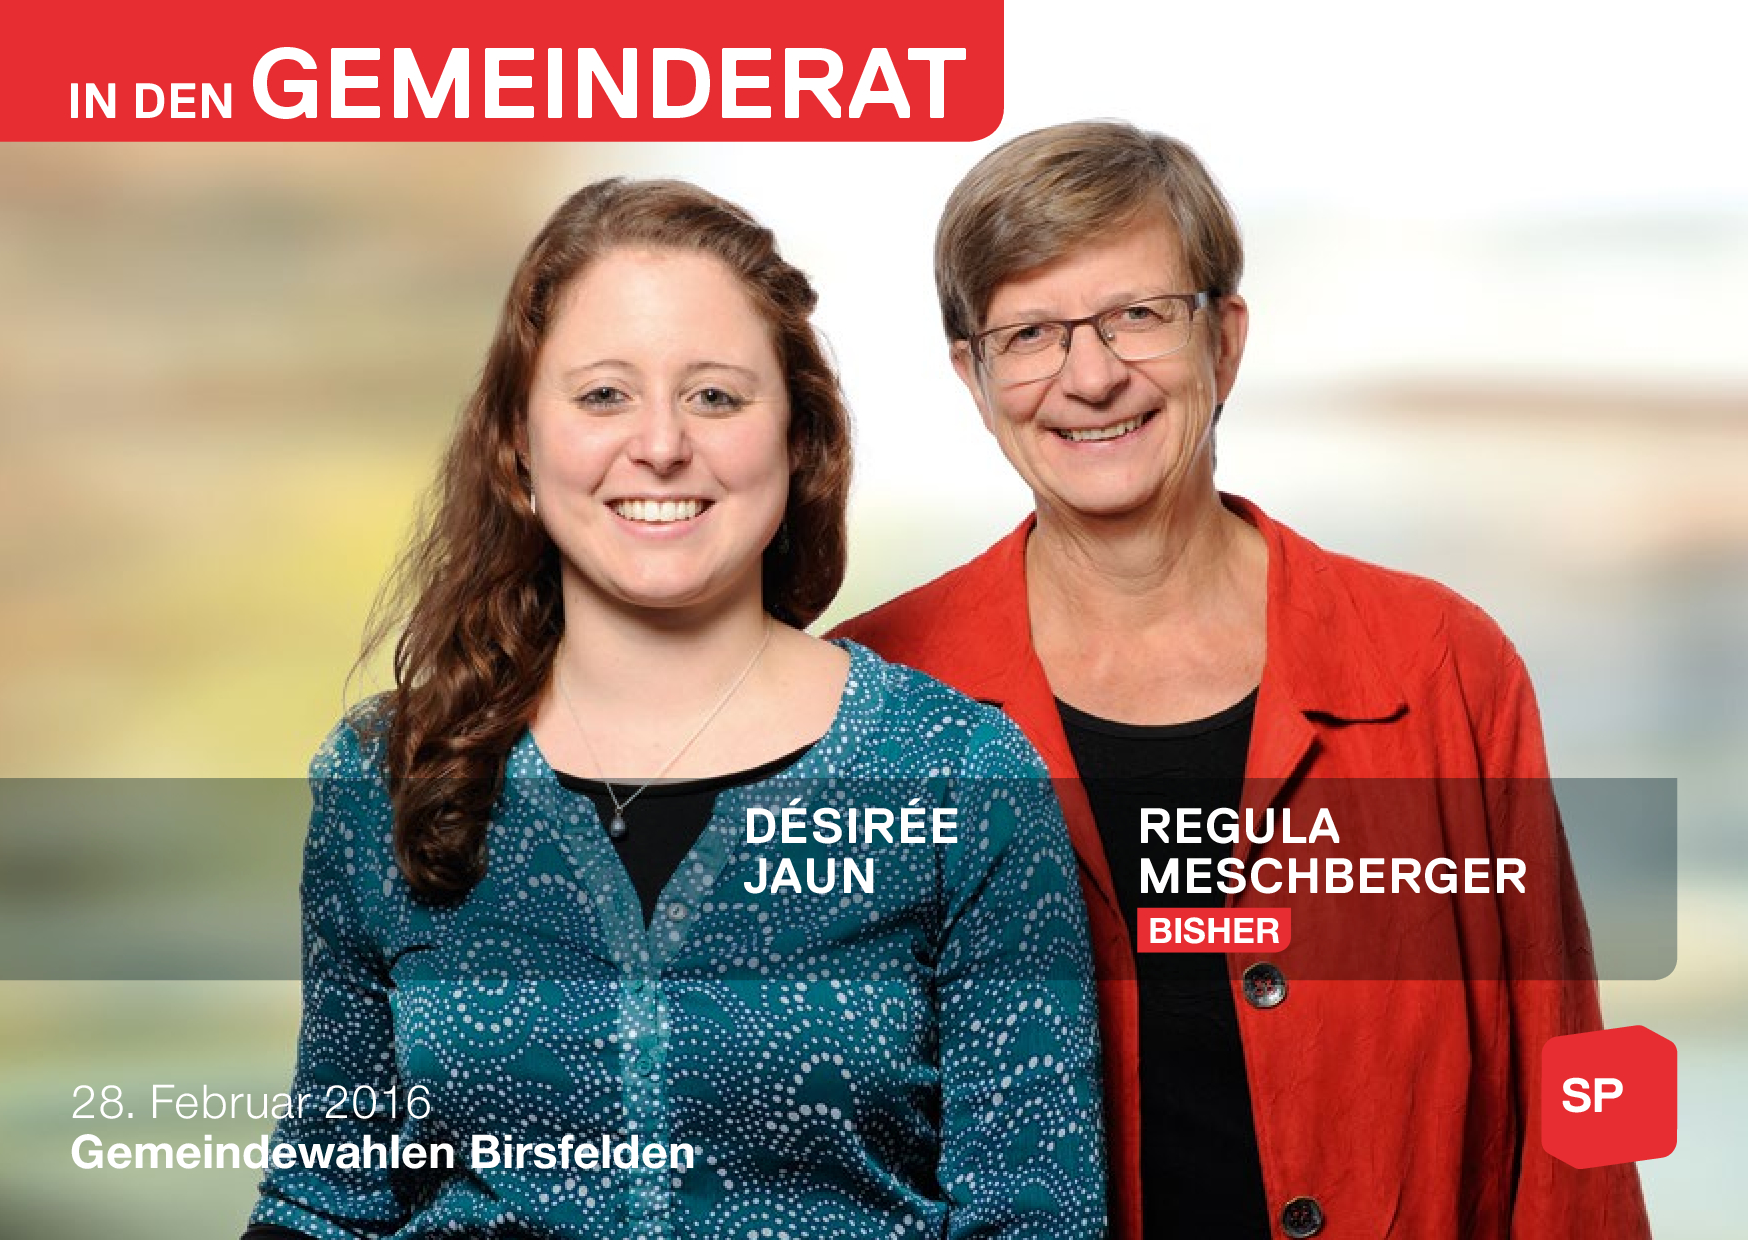 Désirée Jaun und Regula Meschberger in den Gemeinderat